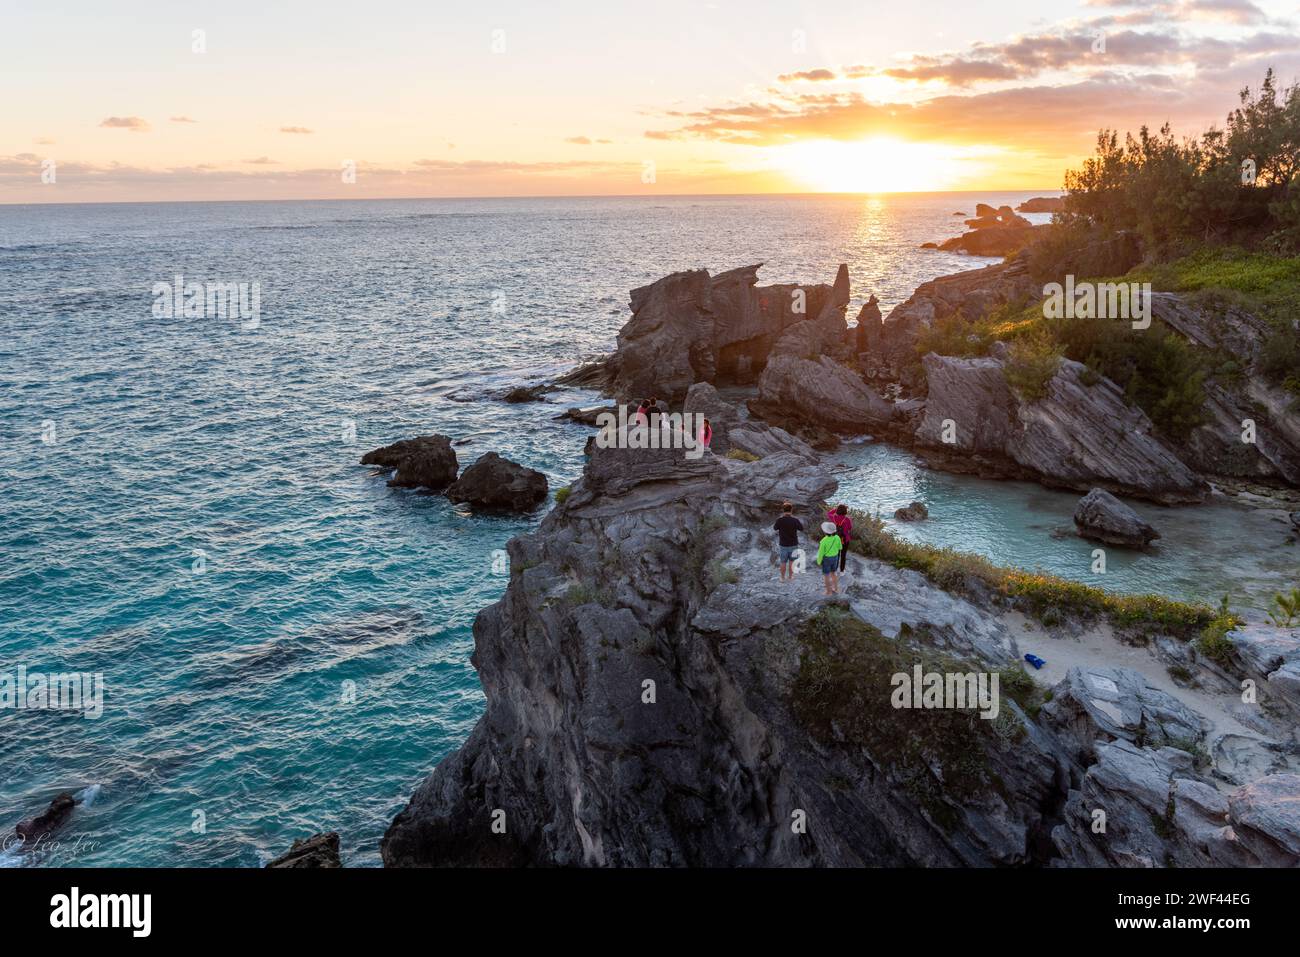 Catturando la bellezza serena della costa delle Bermuda al tramonto, dove la grande roccia si erge come una maestosa silhouette sullo sfondo tranquillo dell'oceano Foto Stock